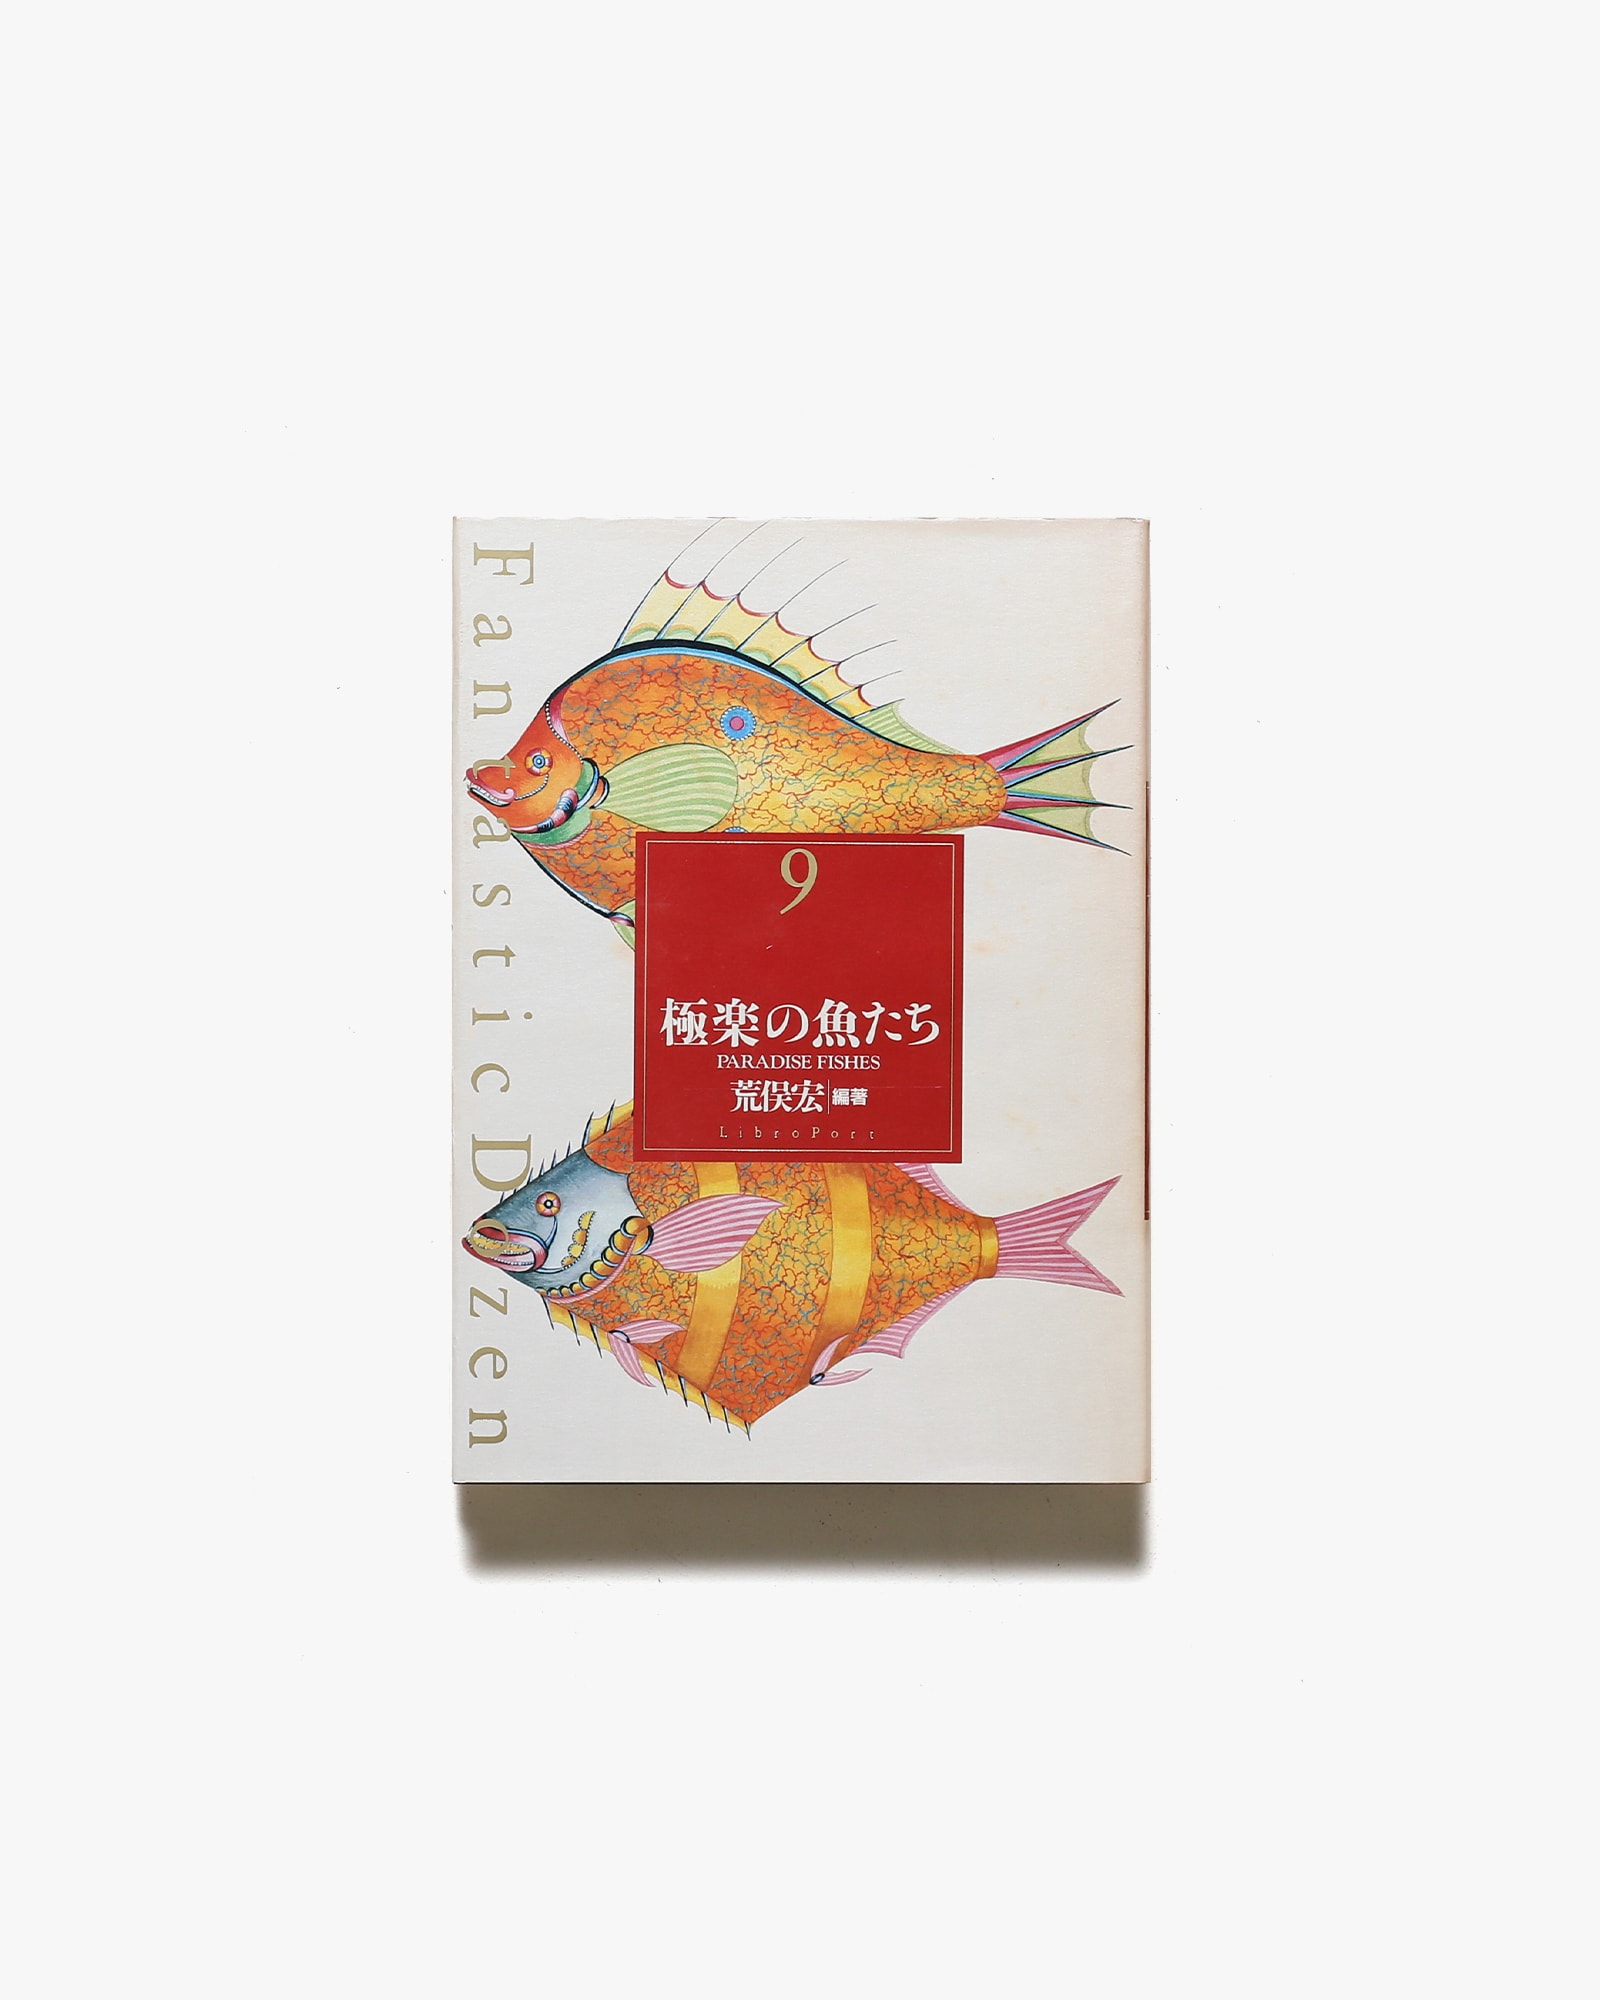 ファンタスティック12 第9巻 極楽の魚たち